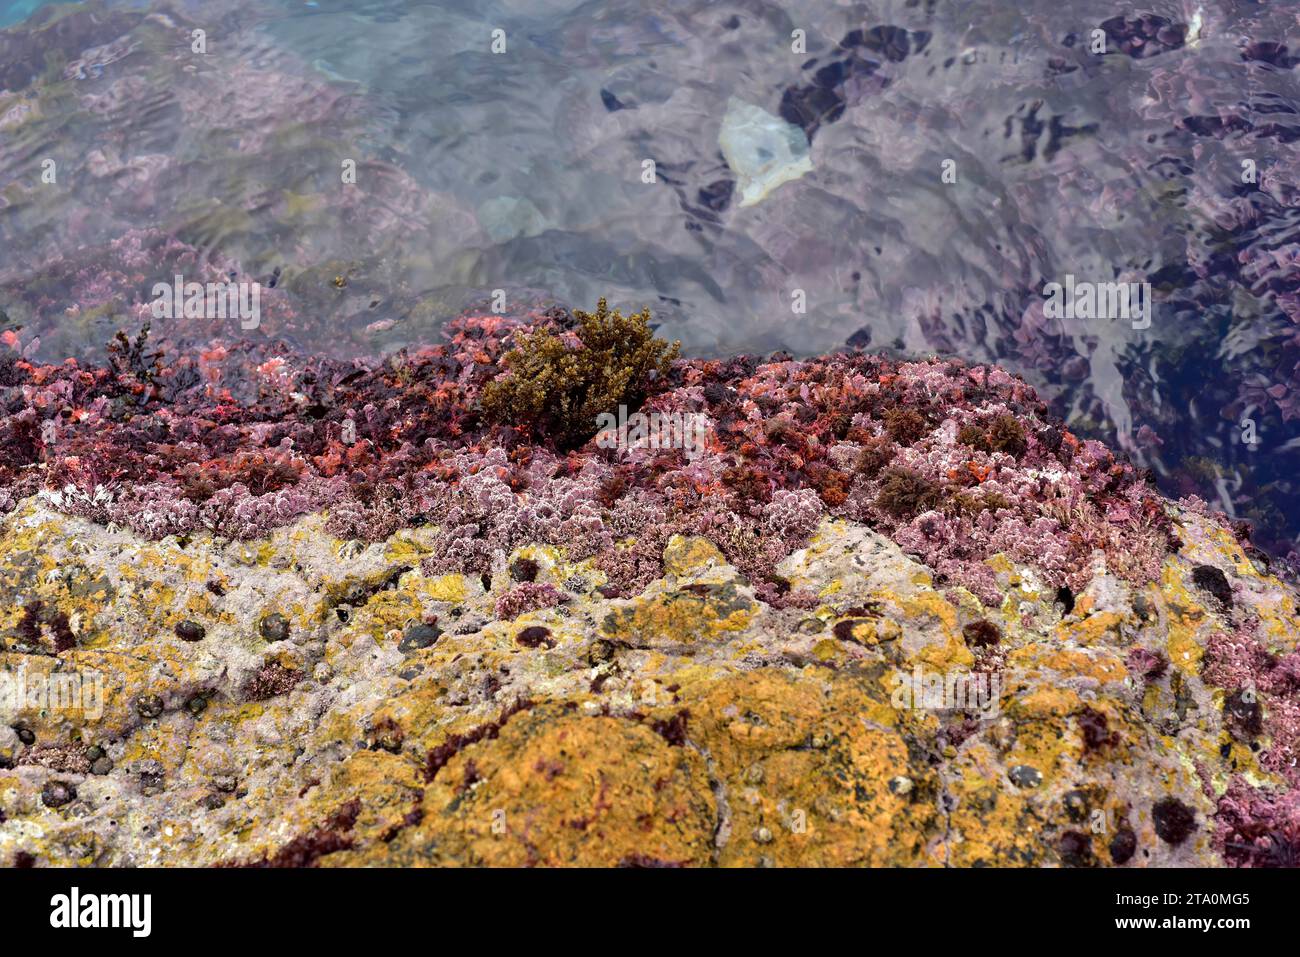 Corallina elongata è un'alga marina rossa con scheletro calcareo. Questa foto è stata scattata a SA Tuna, Begur, provincia di Girona, Catalogna, Spagna. Foto Stock